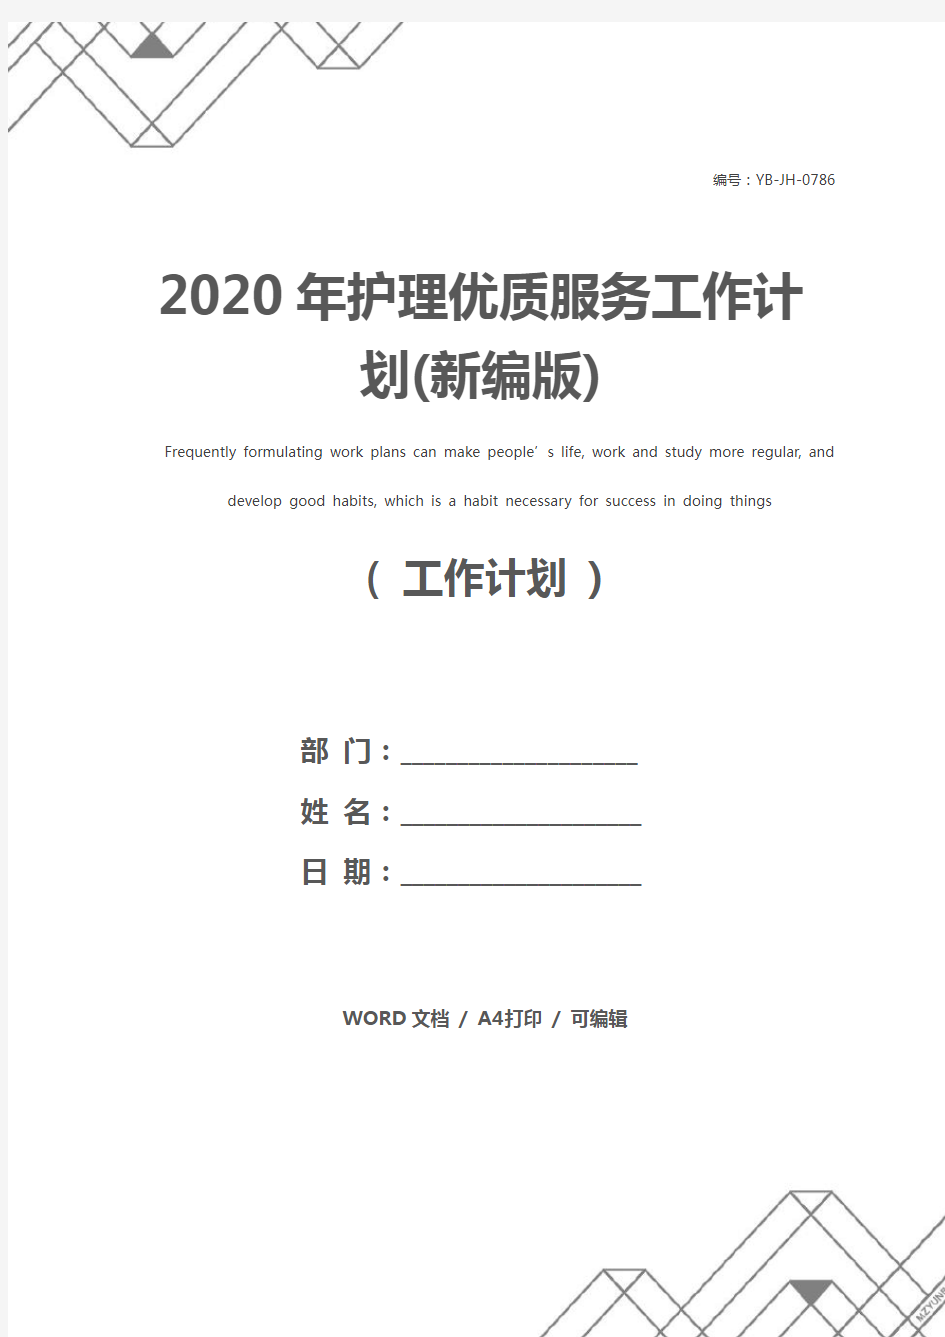 2020年护理优质服务工作计划(新编版)